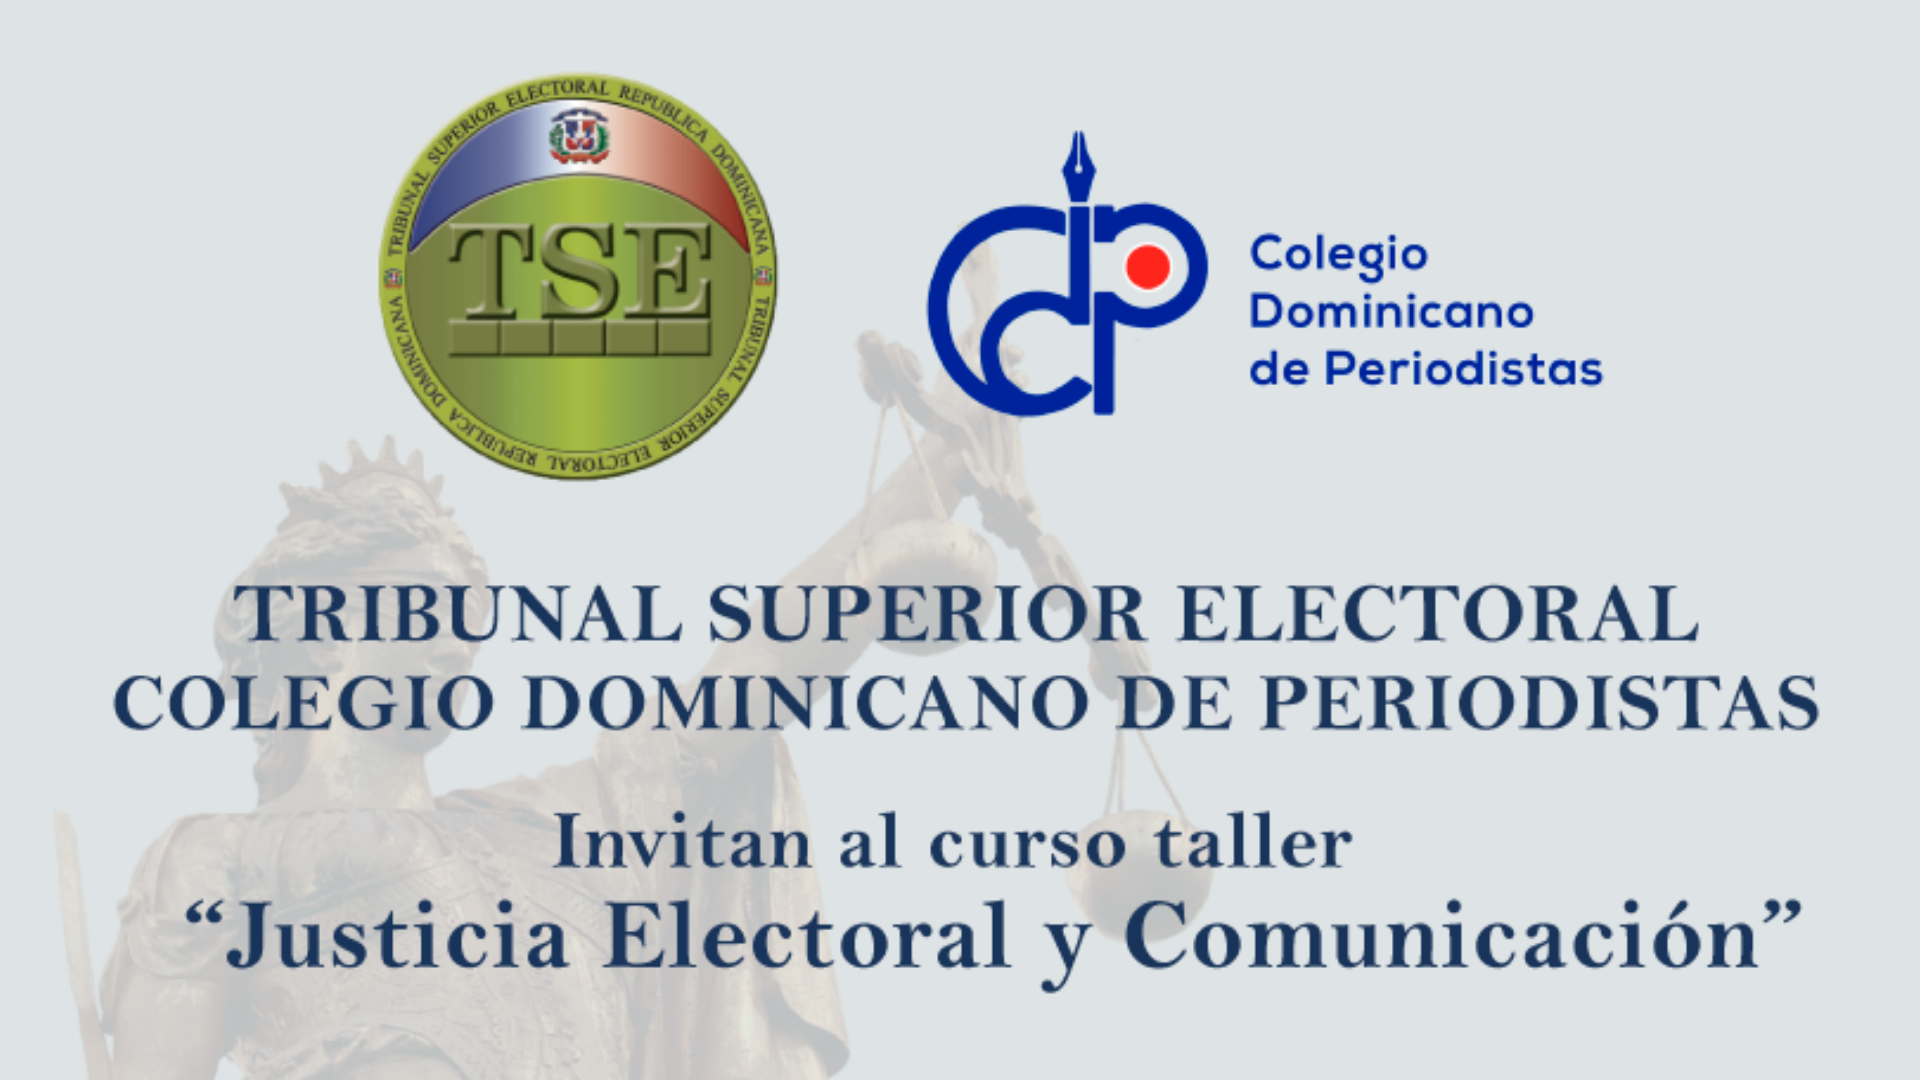 Curso taller “Justicia Electoral y Comunicación”